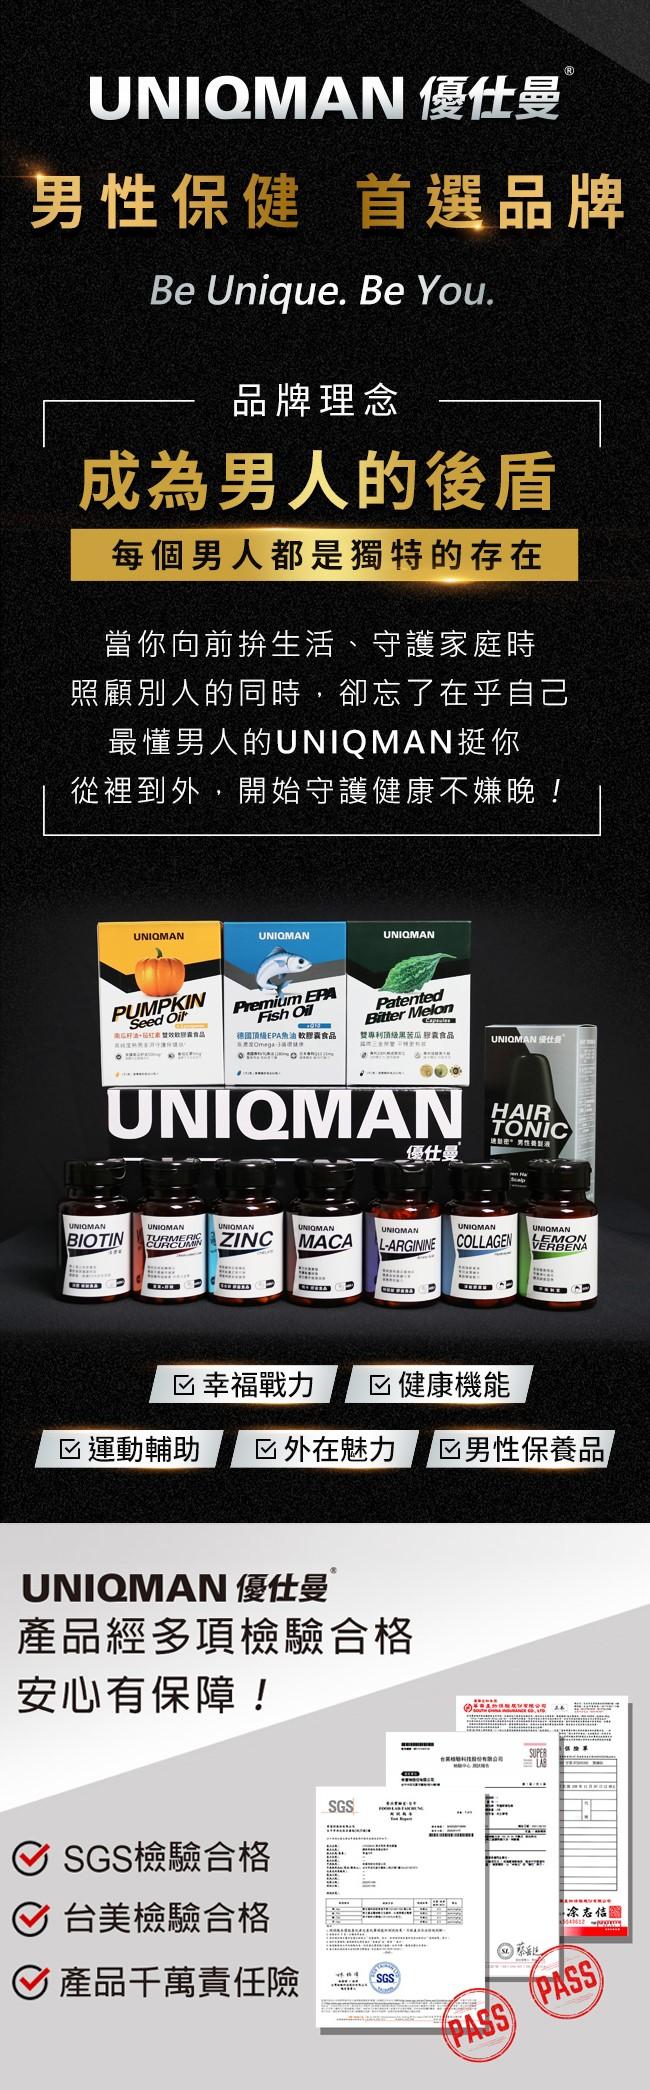 UNIQMAN-馭風素食膠囊(60粒/盒)﻿產品資訊